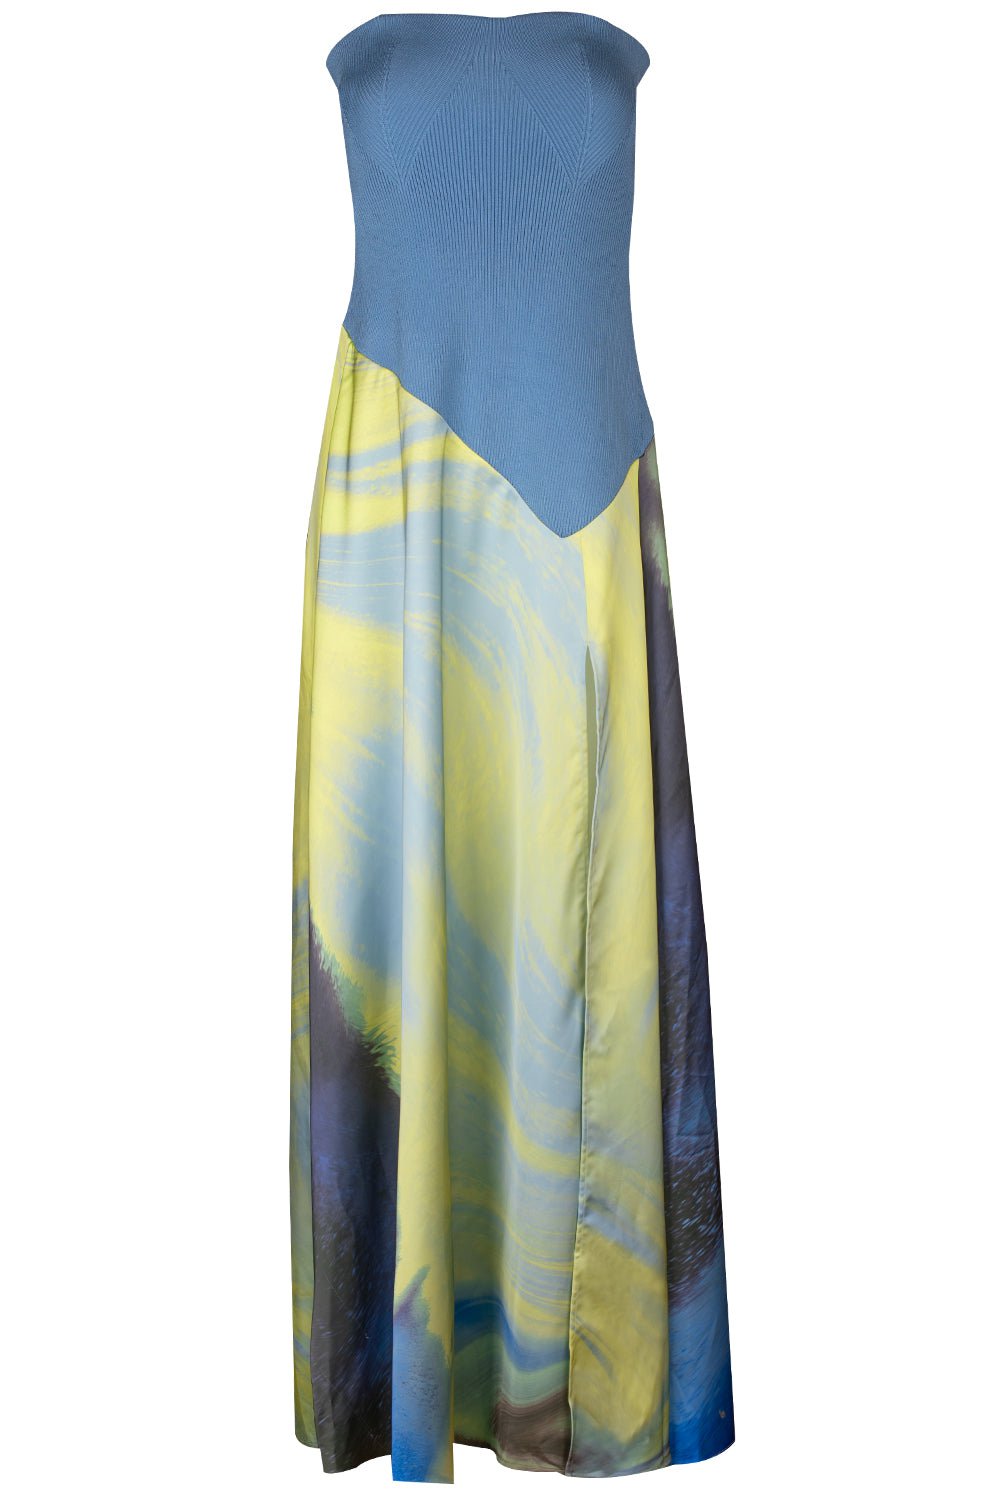 Kory Dress CLOTHINGDRESSCASUAL SIMKHAI   